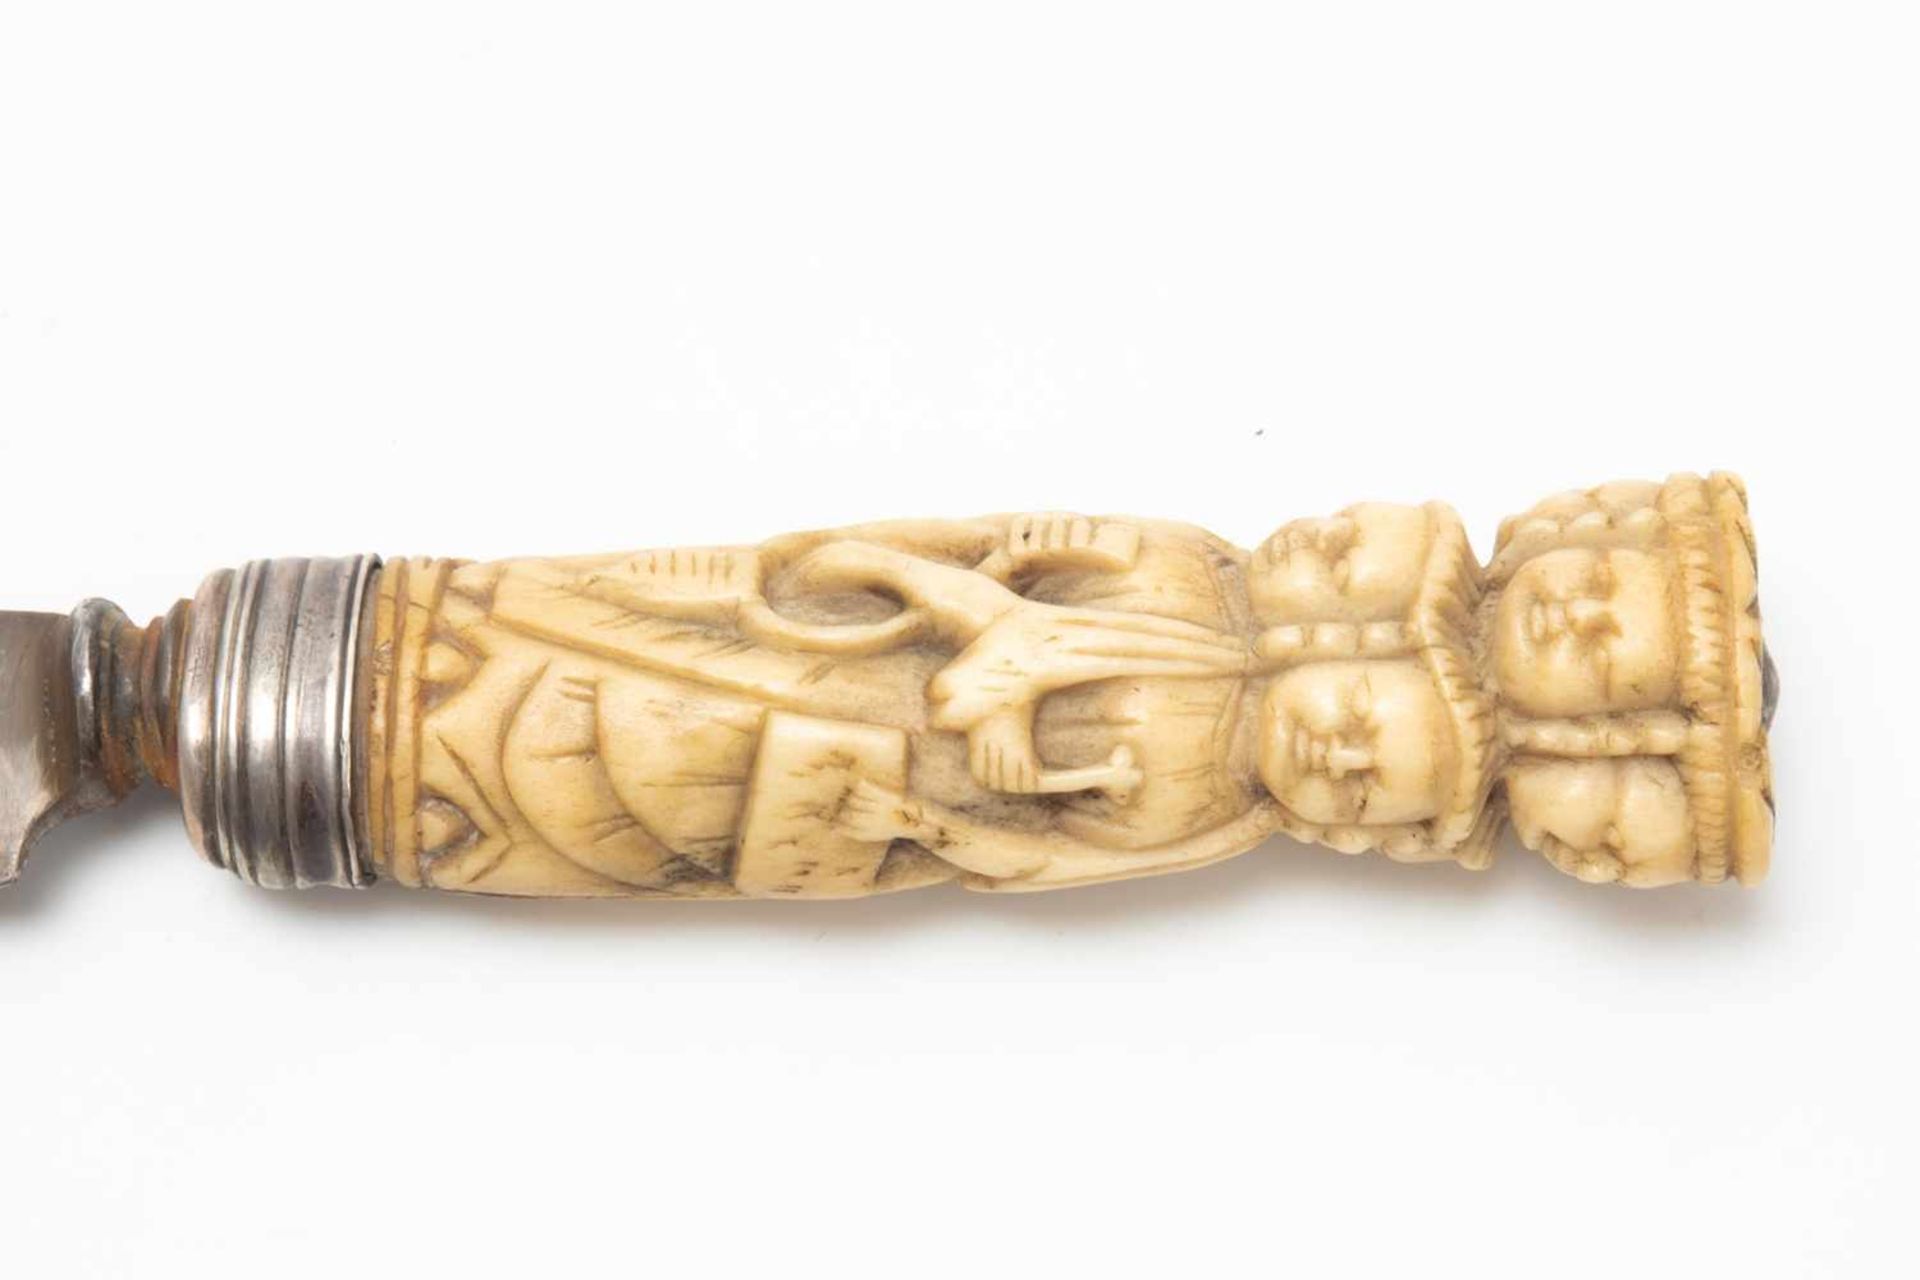 Asian ornate dagger - Image 3 of 5